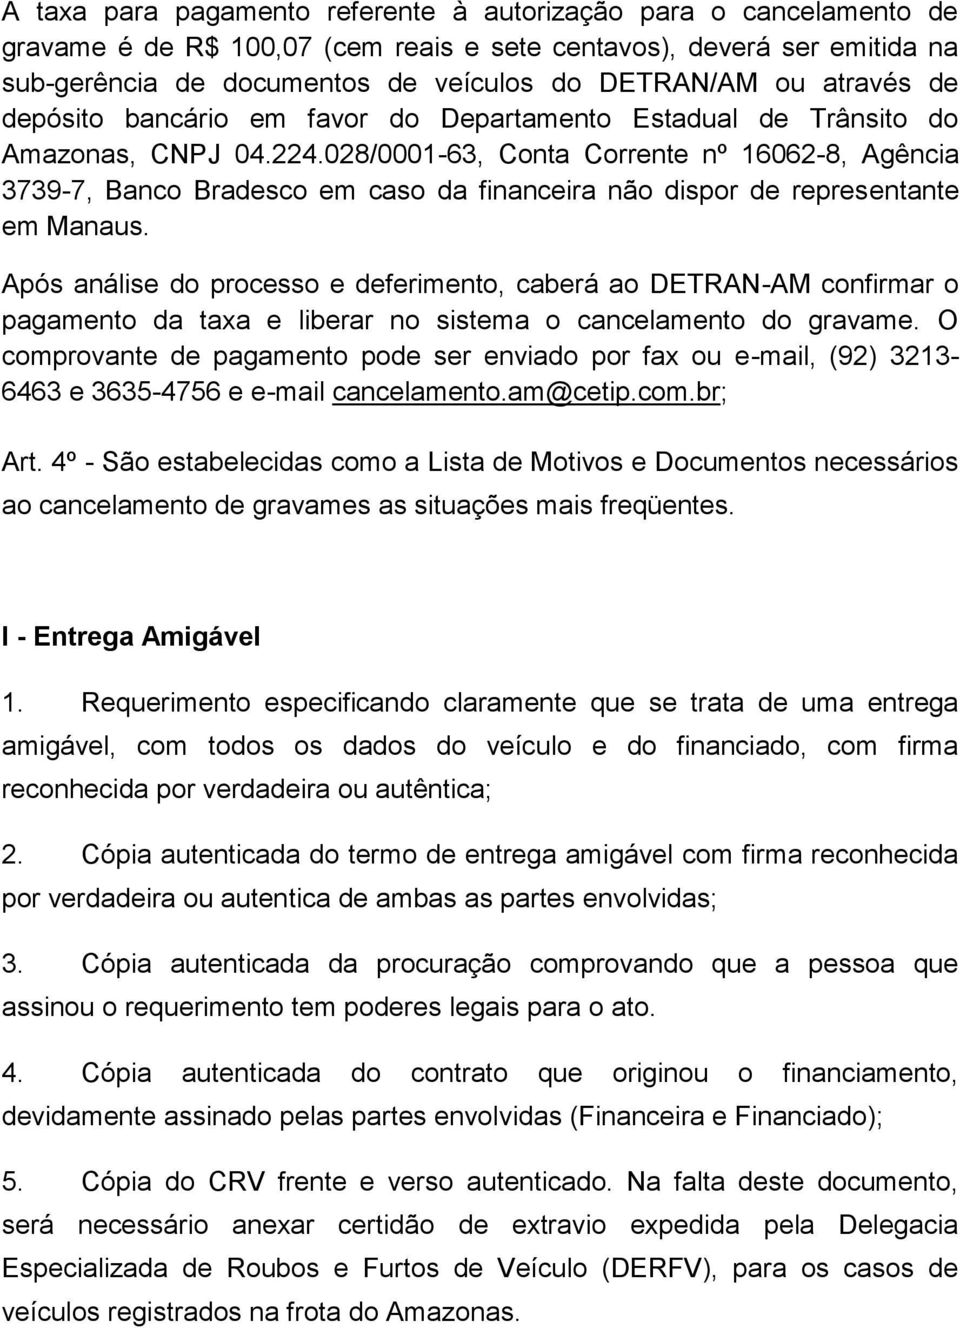 028/0001-63, Conta Corrente nº 16062-8, Agência 3739-7, Banco Bradesco em caso da financeira não dispor de representante em Manaus.